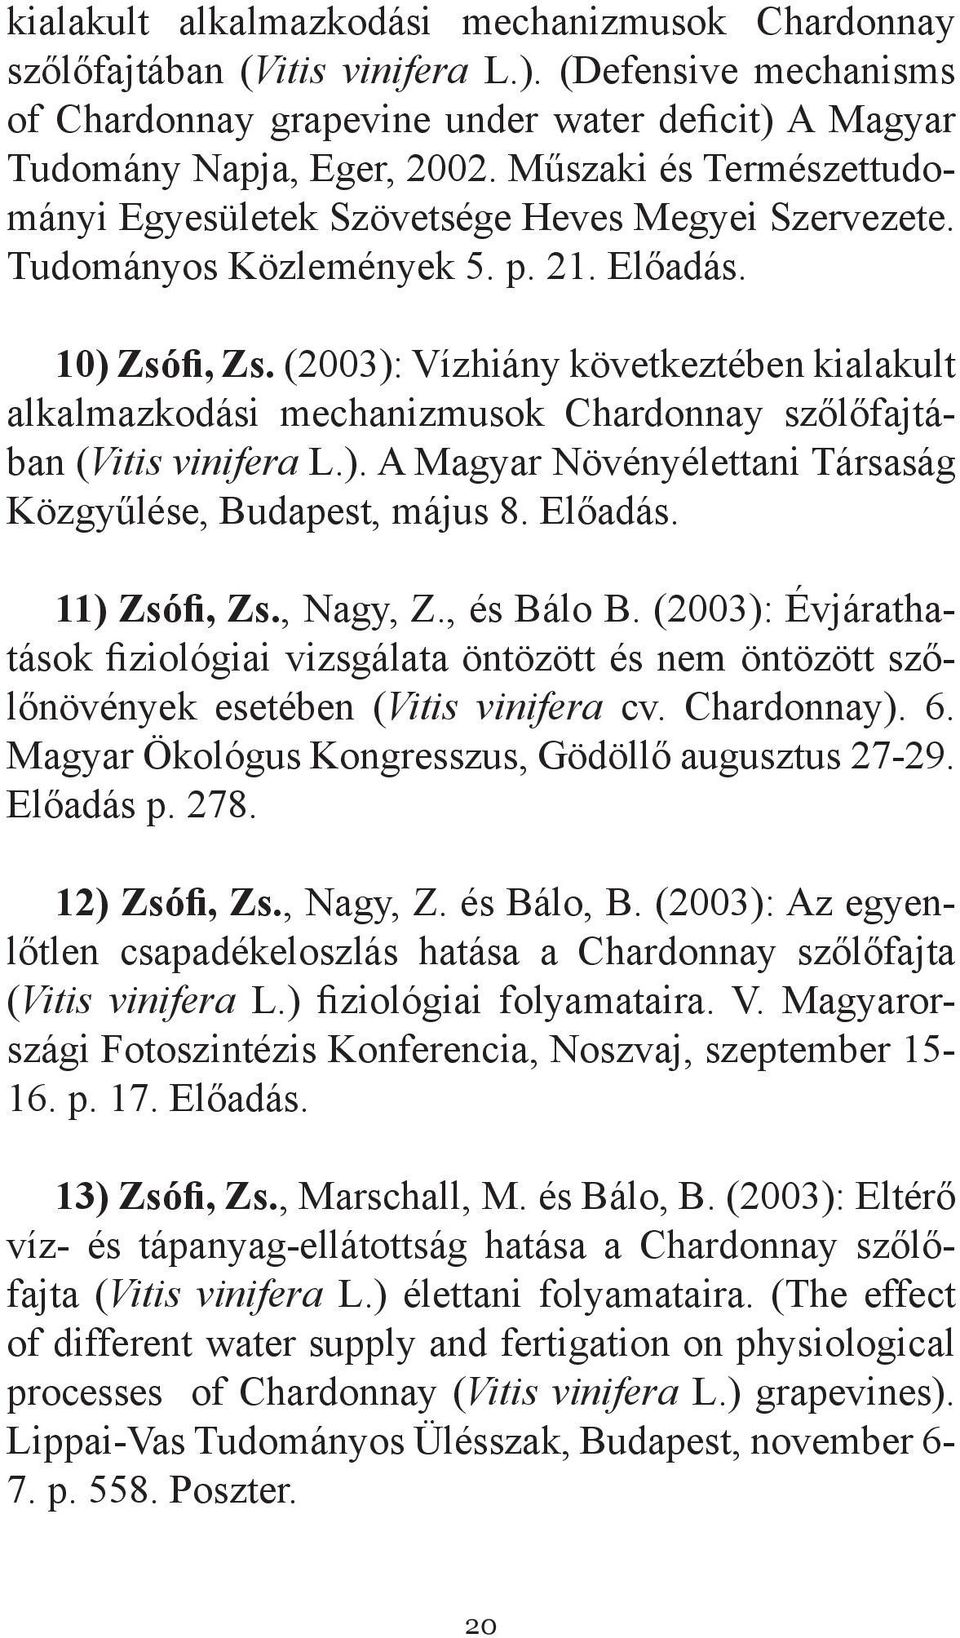 (2003): Vízhiány következtében kialakult alkalmazkodási mechanizmusok Chardonnay szőlőfajtában (Vitis vinifera L.). A Magyar Növényélettani Társaság Közgyűlése, Budapest, május 8. Előadás.